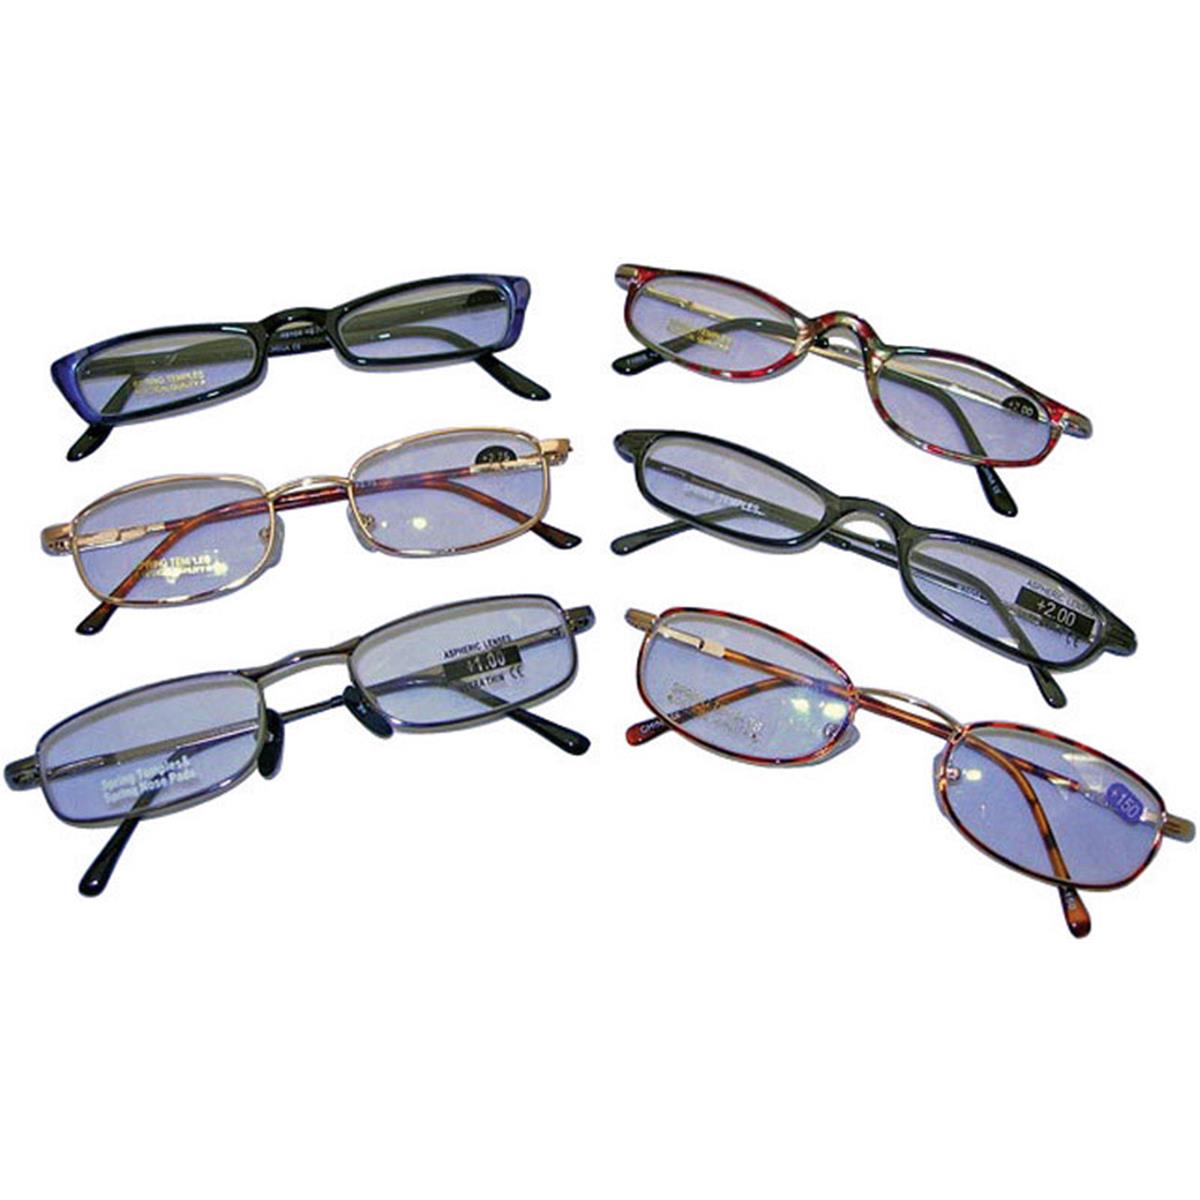 David Designs 3.99 Premium Reading Glasses